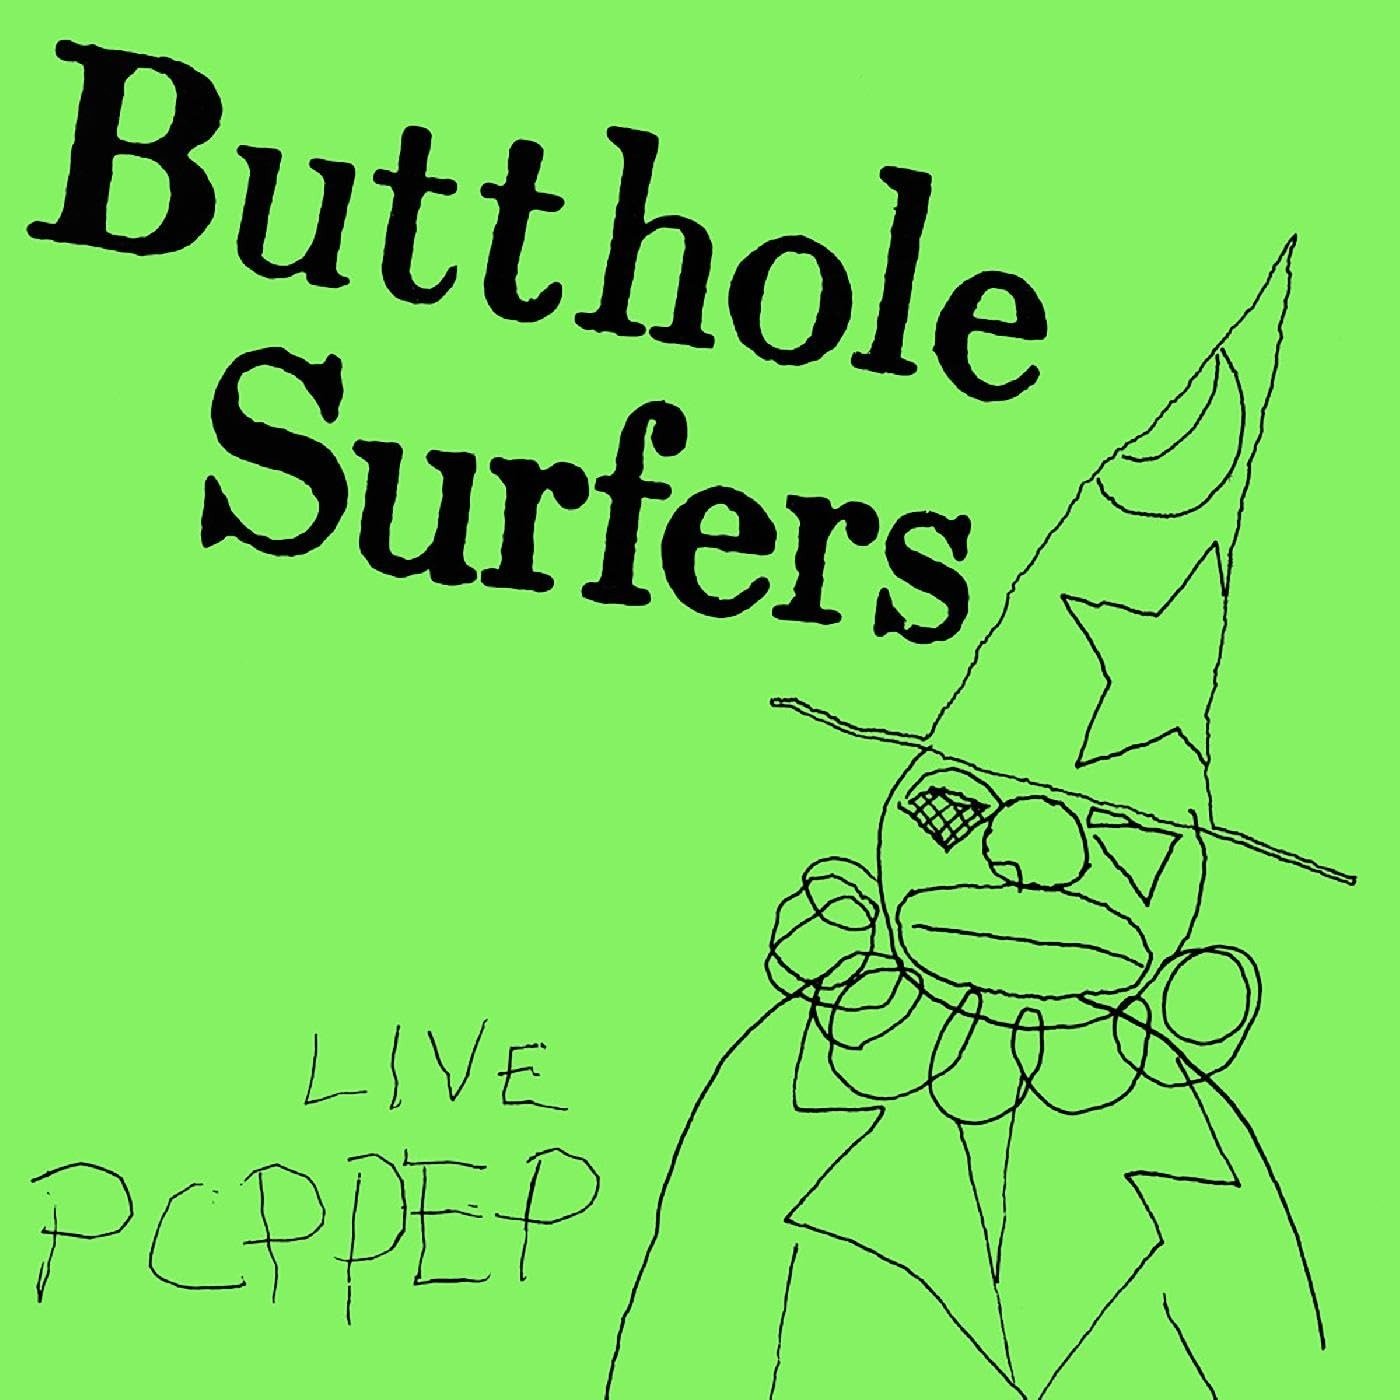 CD Shop - BUTTHOLE SURFERS LIVE PCPPEP